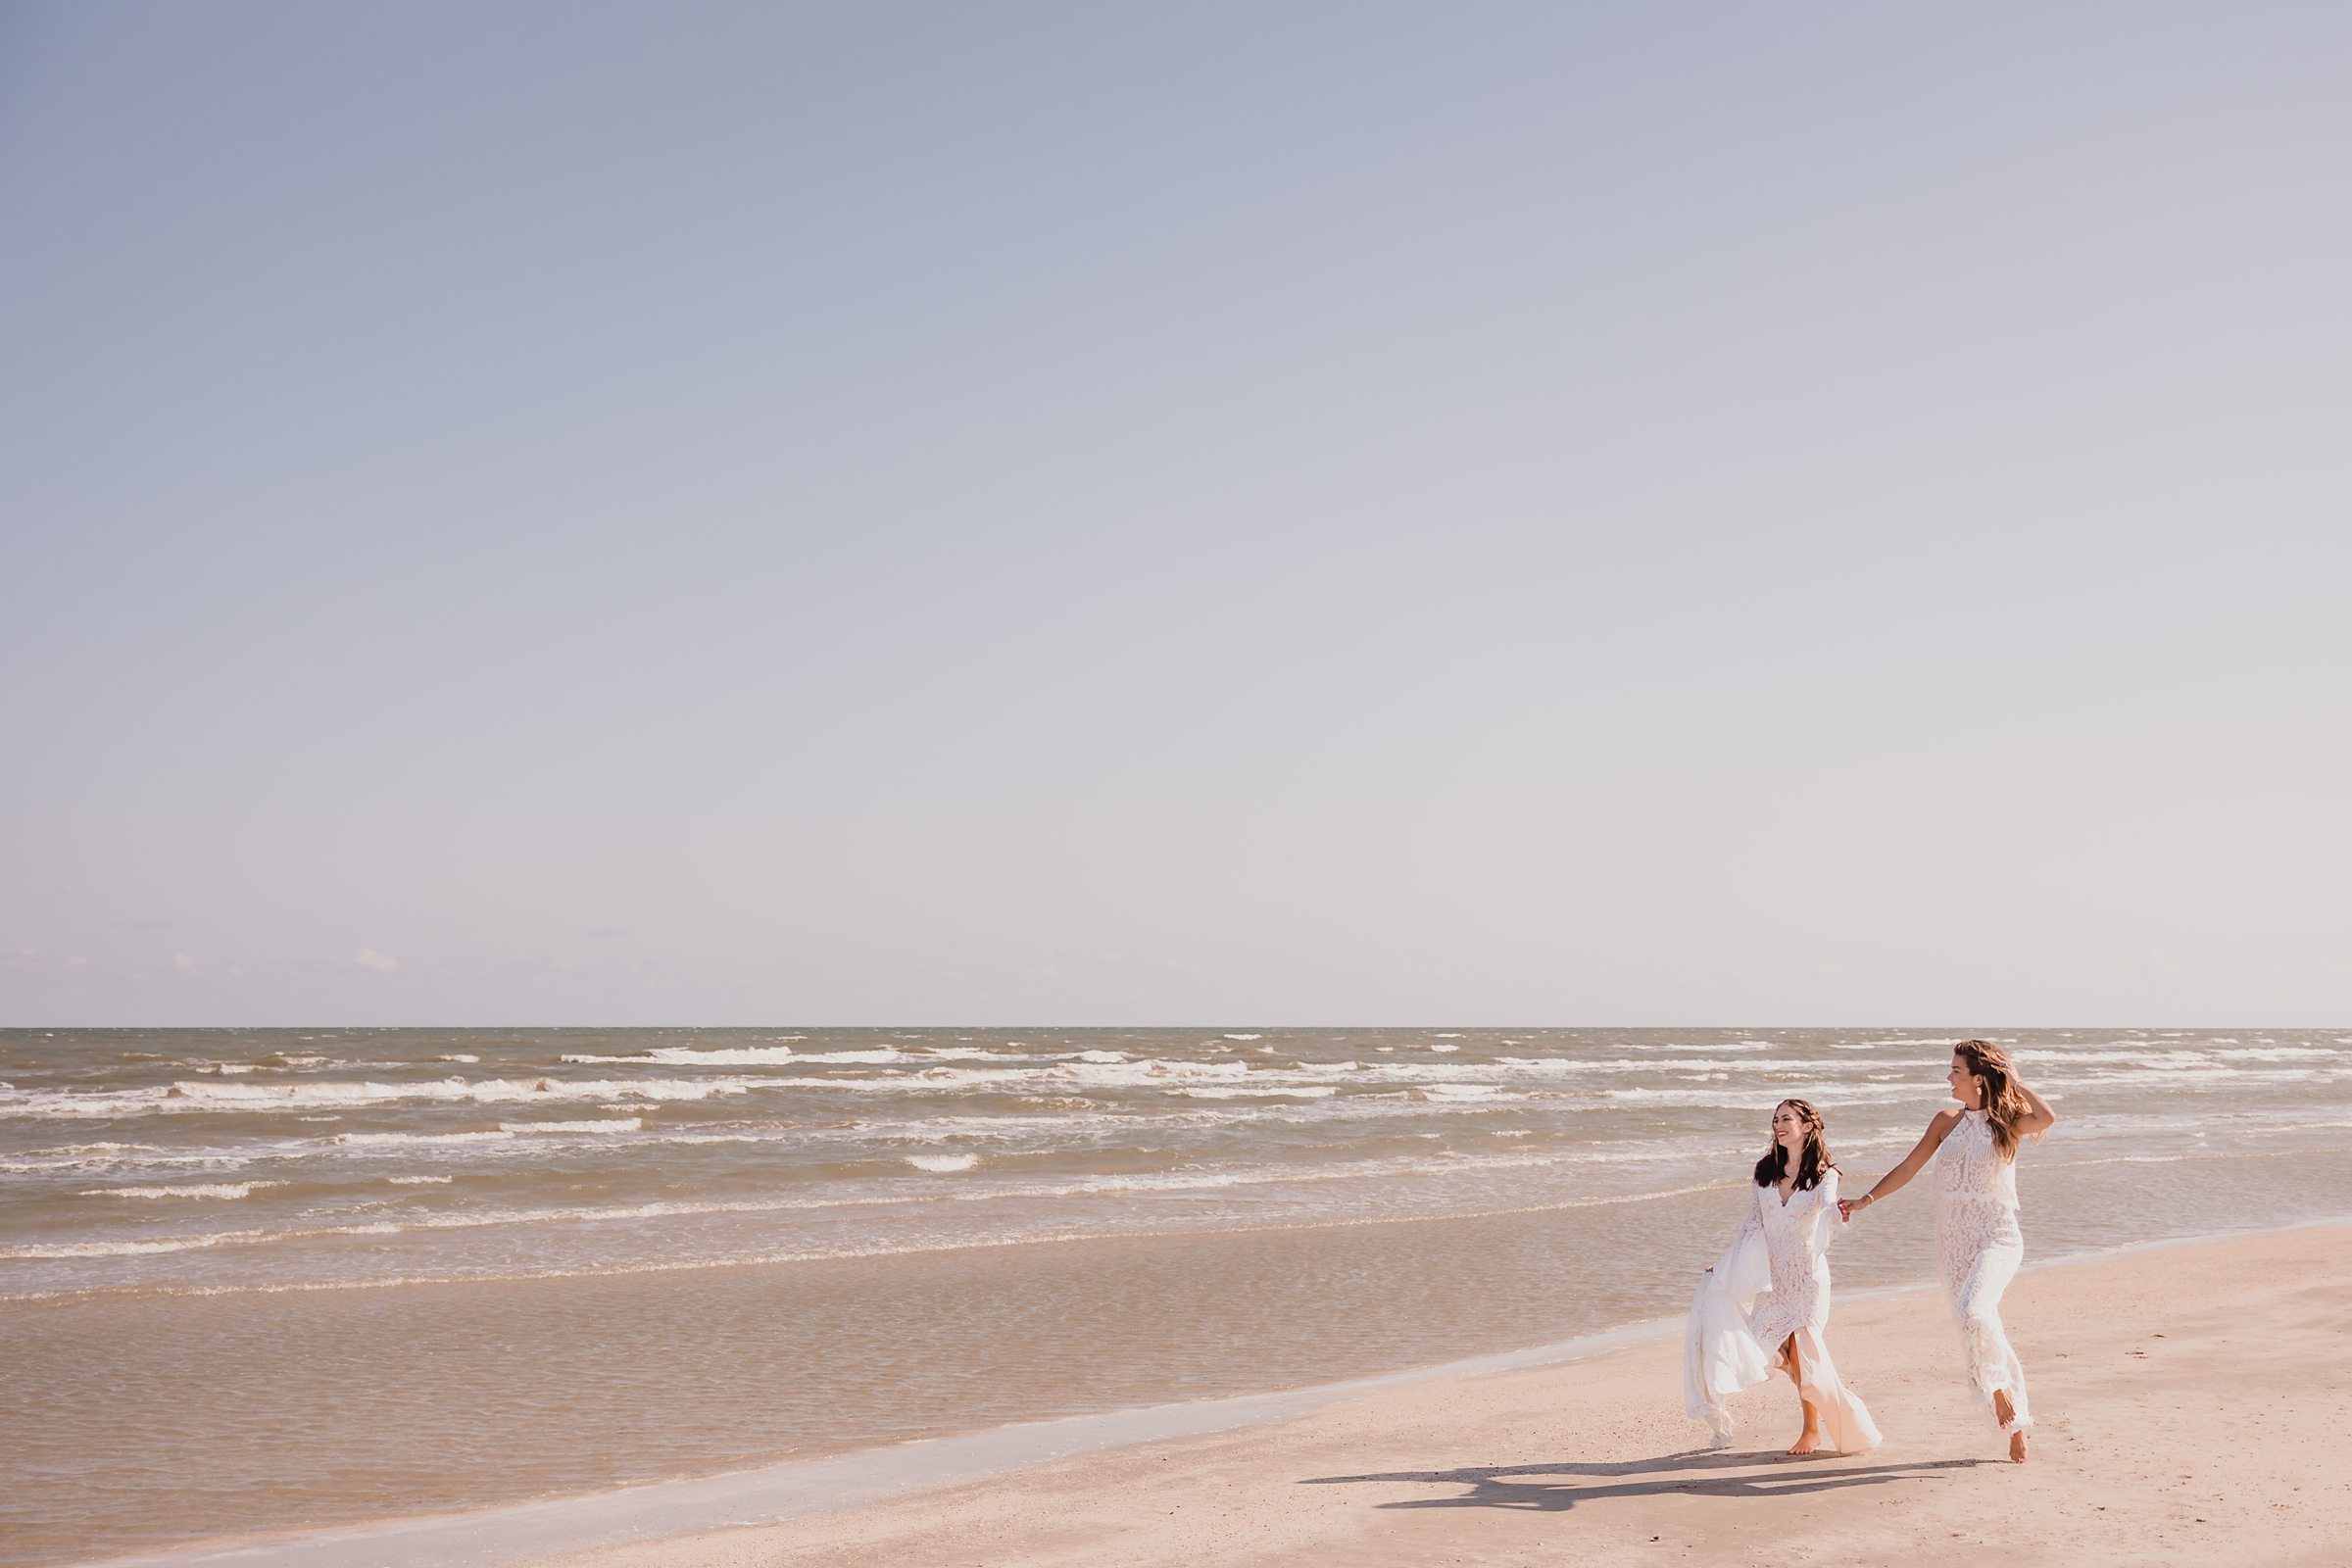 Brides run down the beach during an elopement at Galveston Beach in Texas.